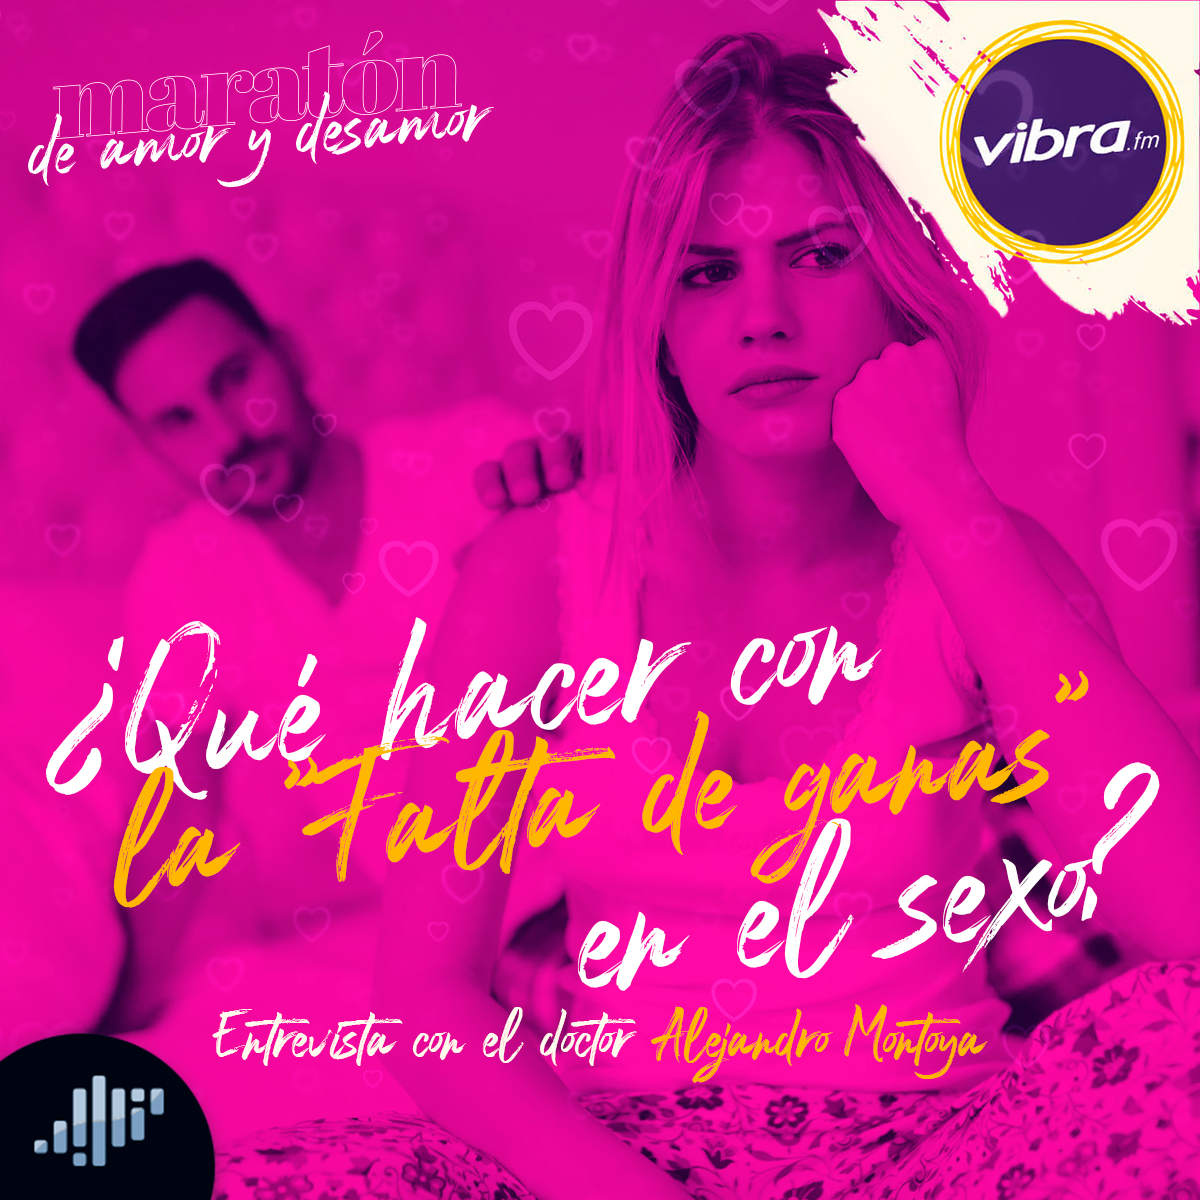 ¿Qué hacer con la "falta de ganas" en el sexo? | Entrevista con Alejandro Montoya